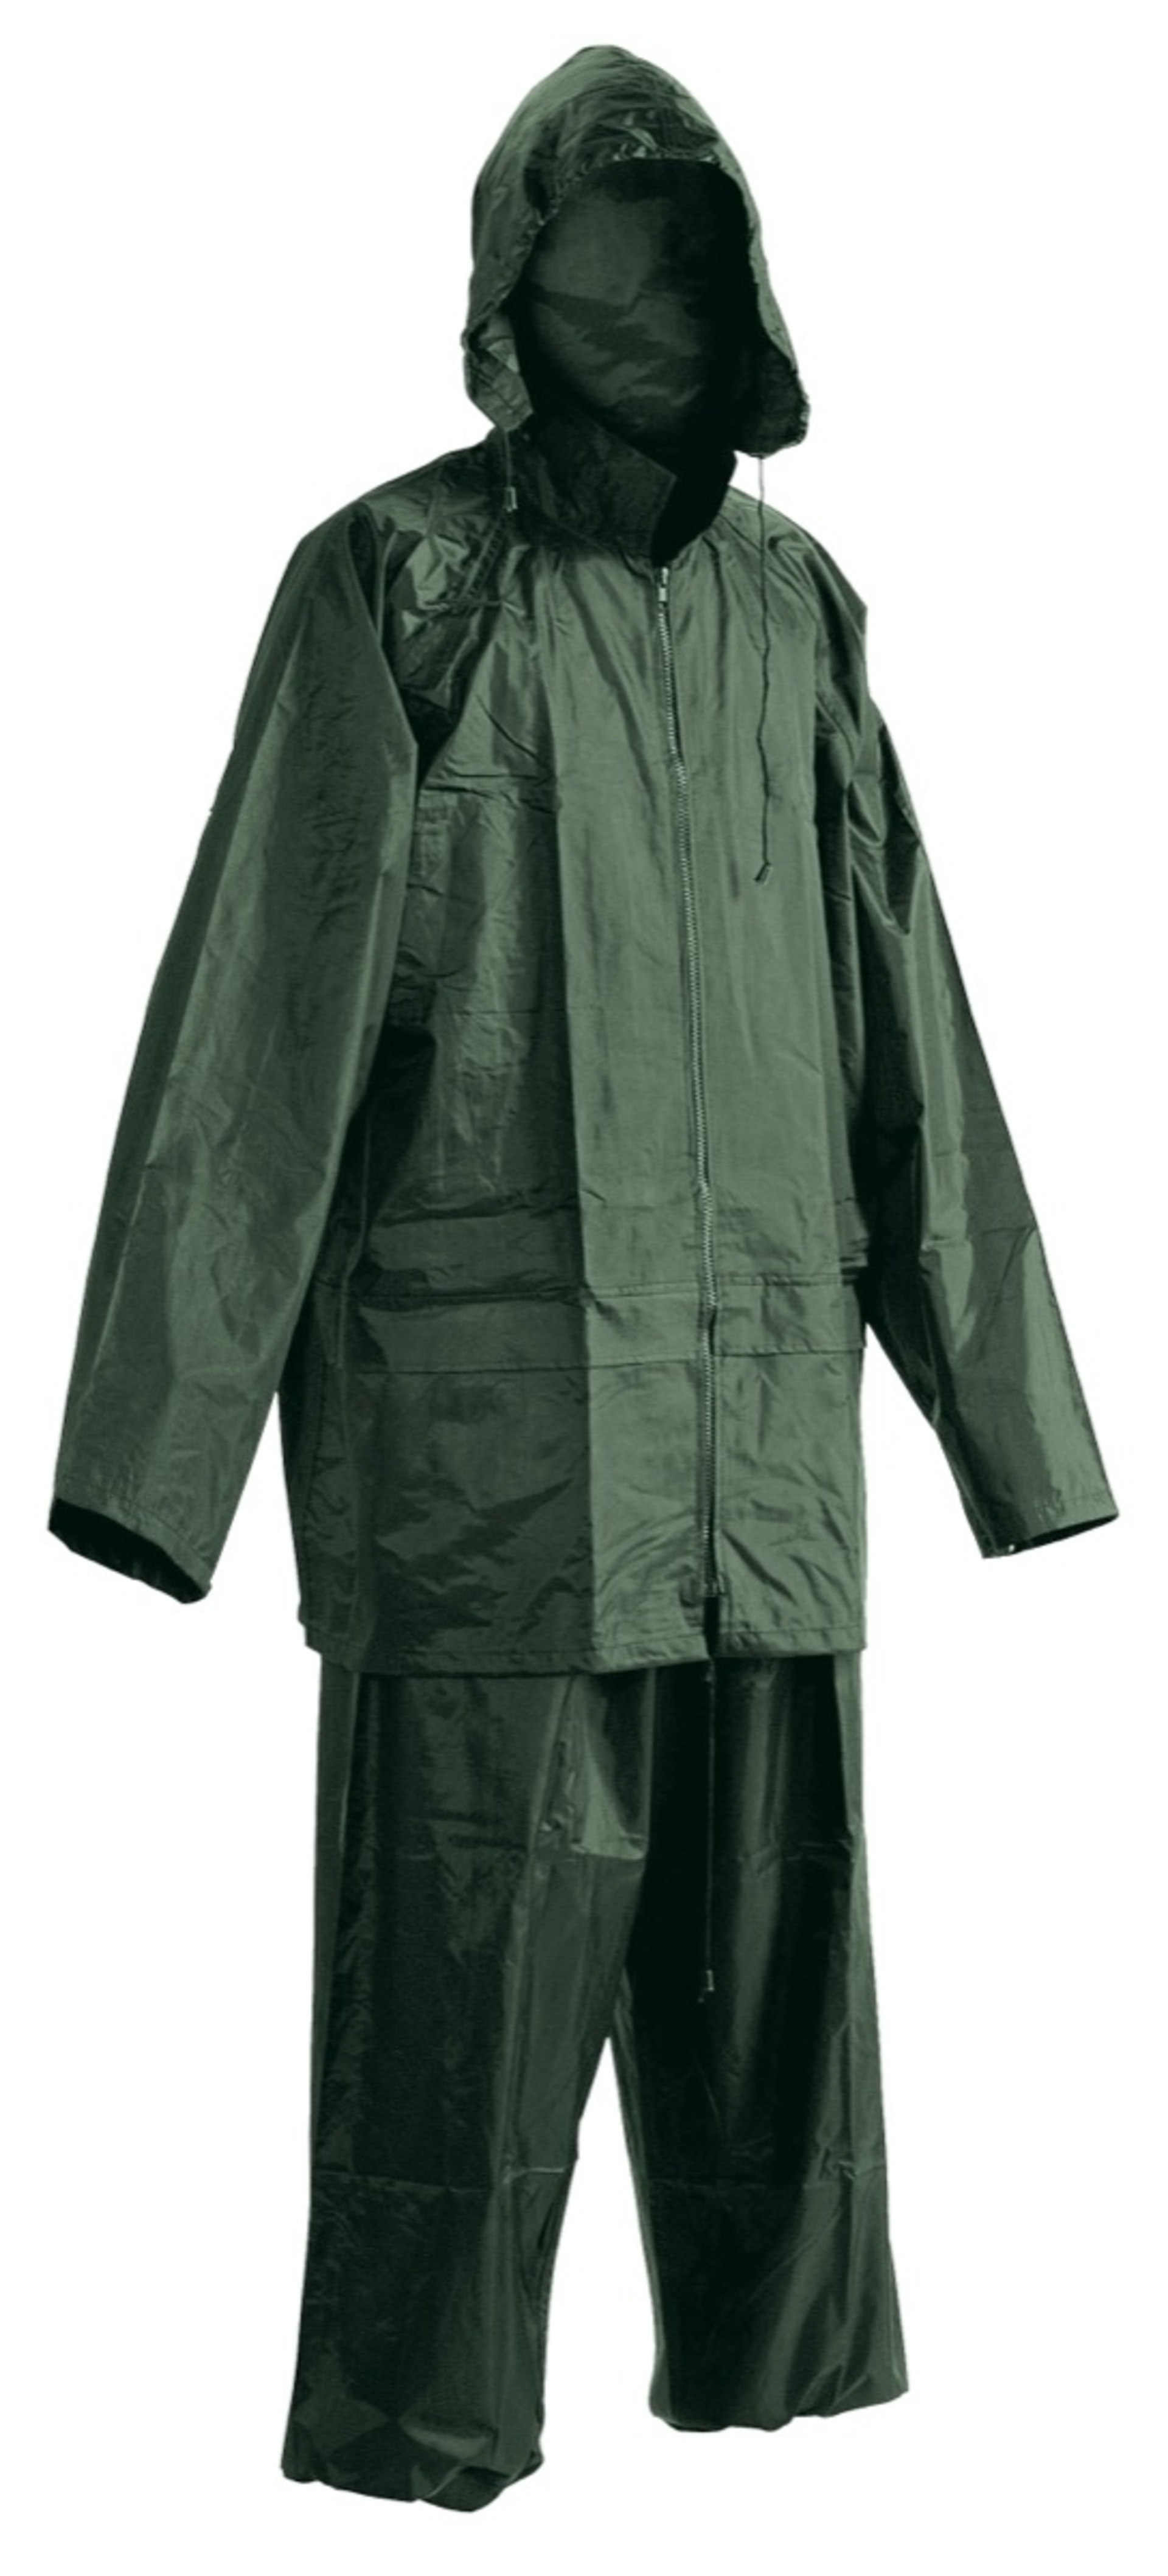 Cerva CARINA Oblek nepromokavý zelená 3XL + Bezplatné vrácení zboží